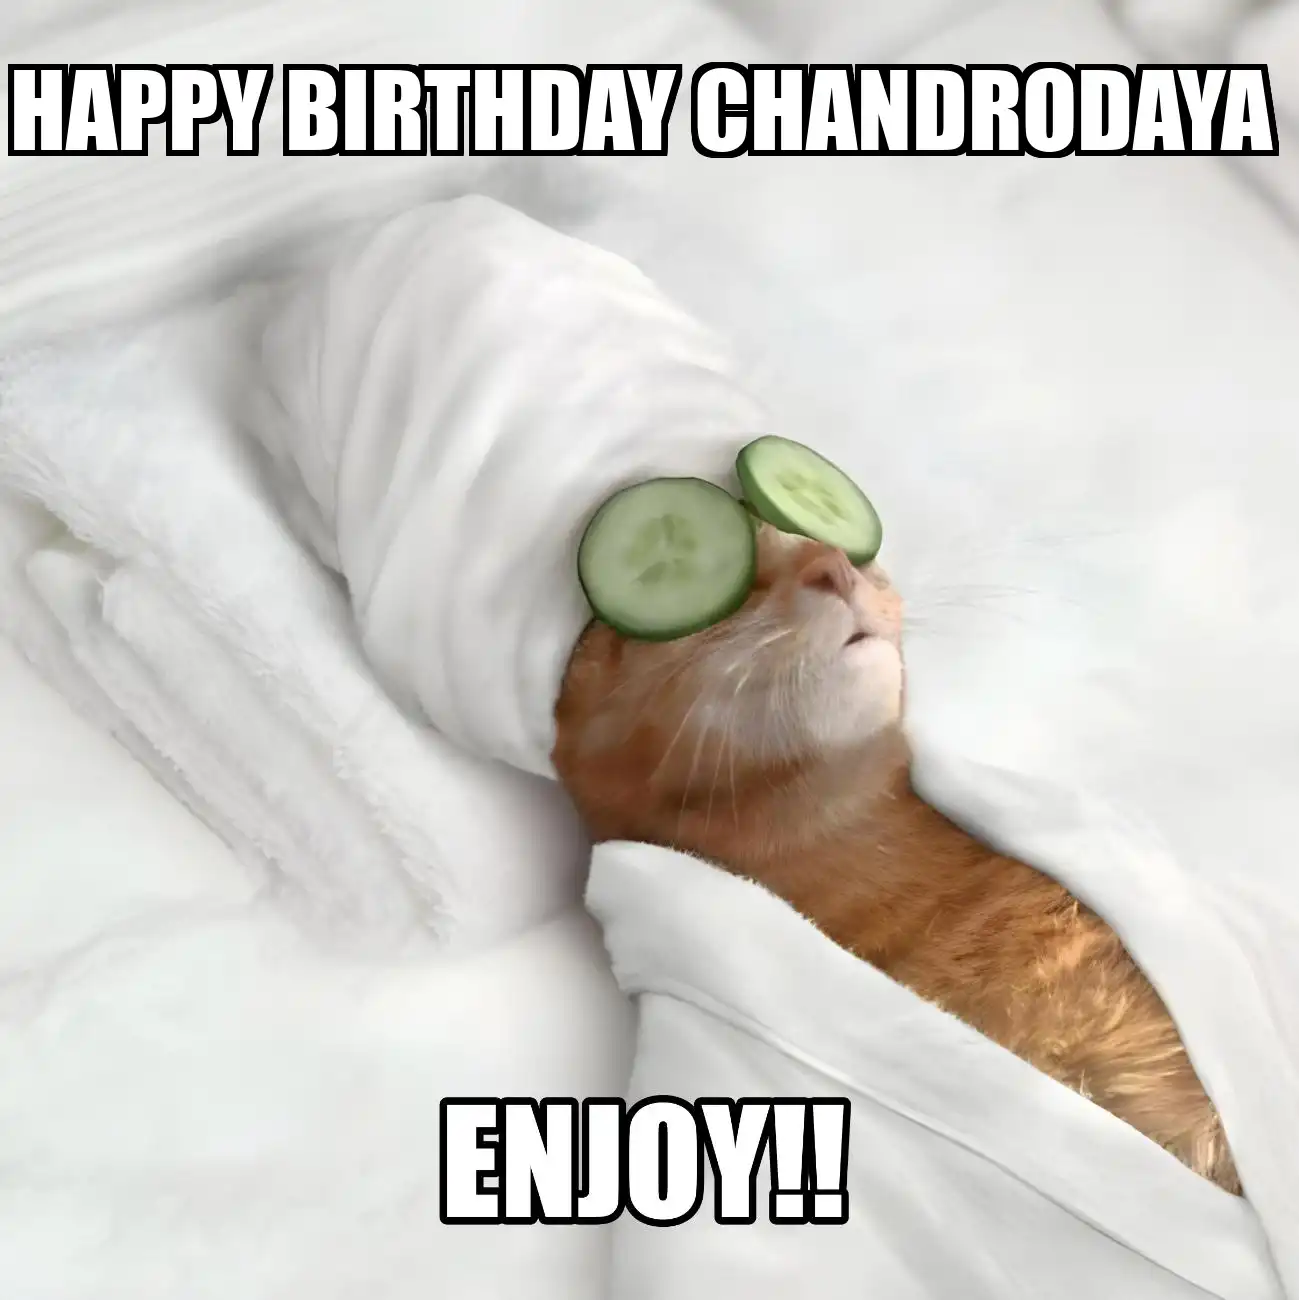 Happy Birthday Chandrodaya Enjoy Cat Meme